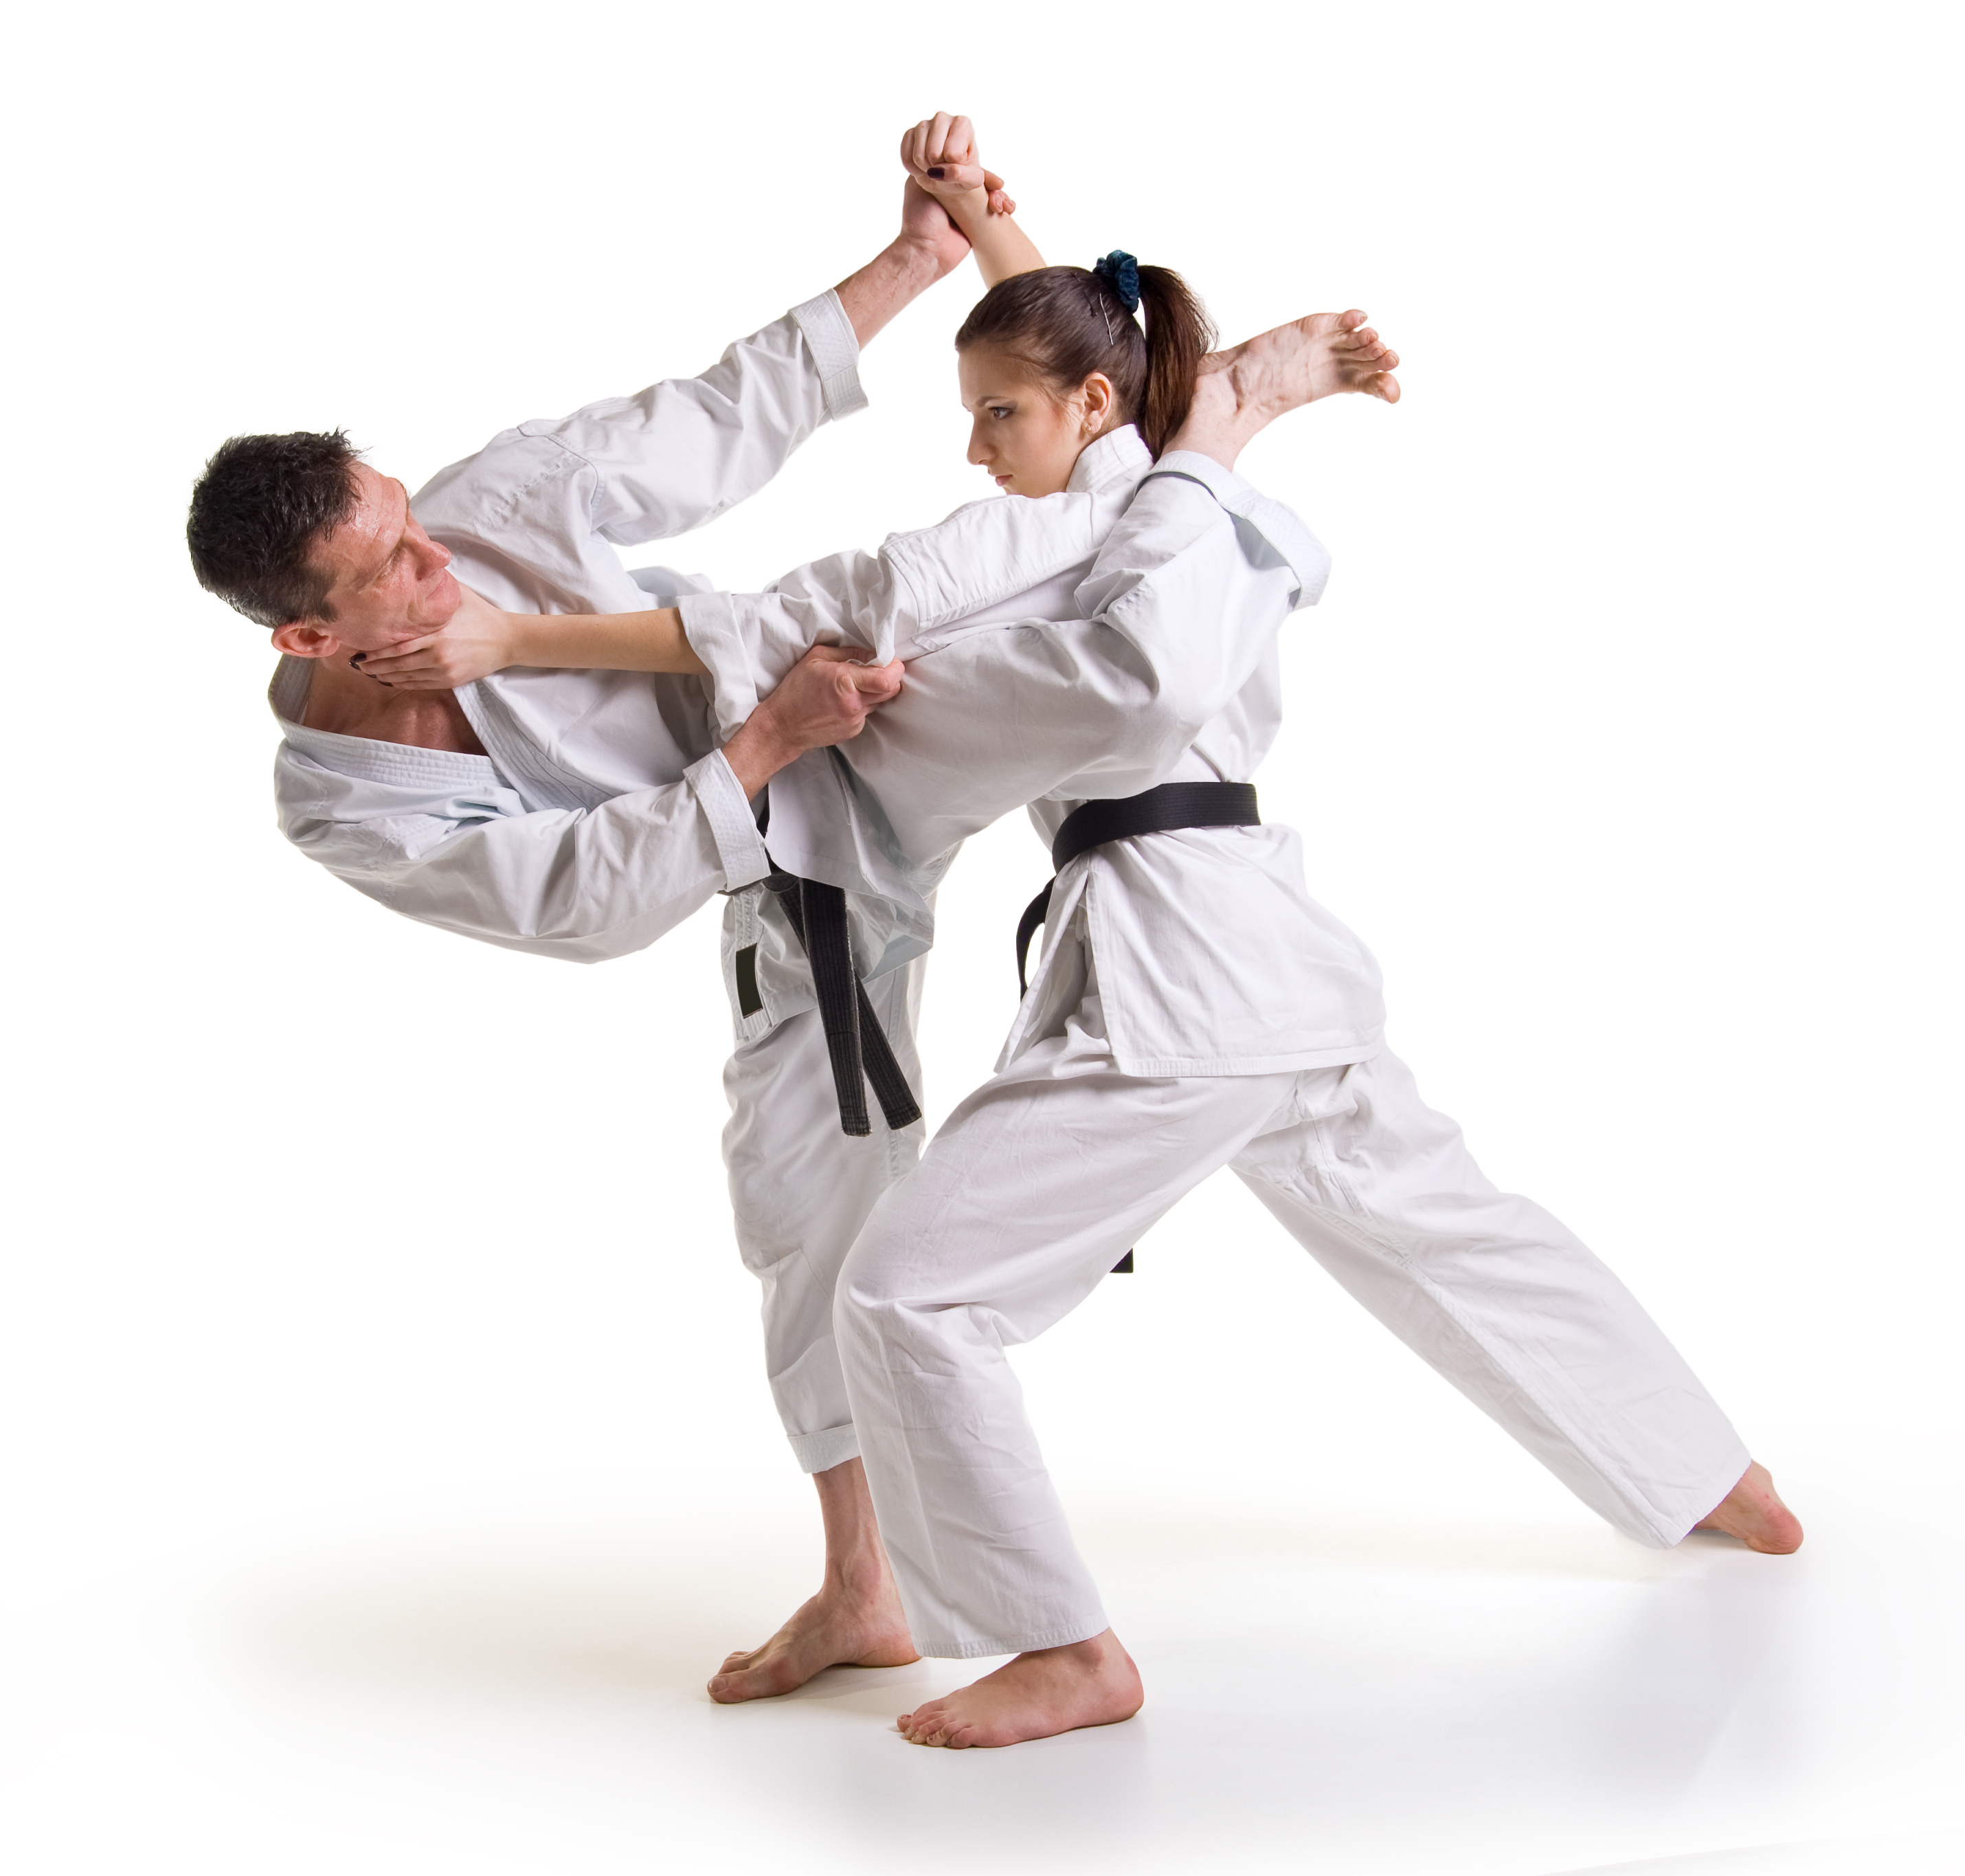 Gambar Karate - Cliparts.co